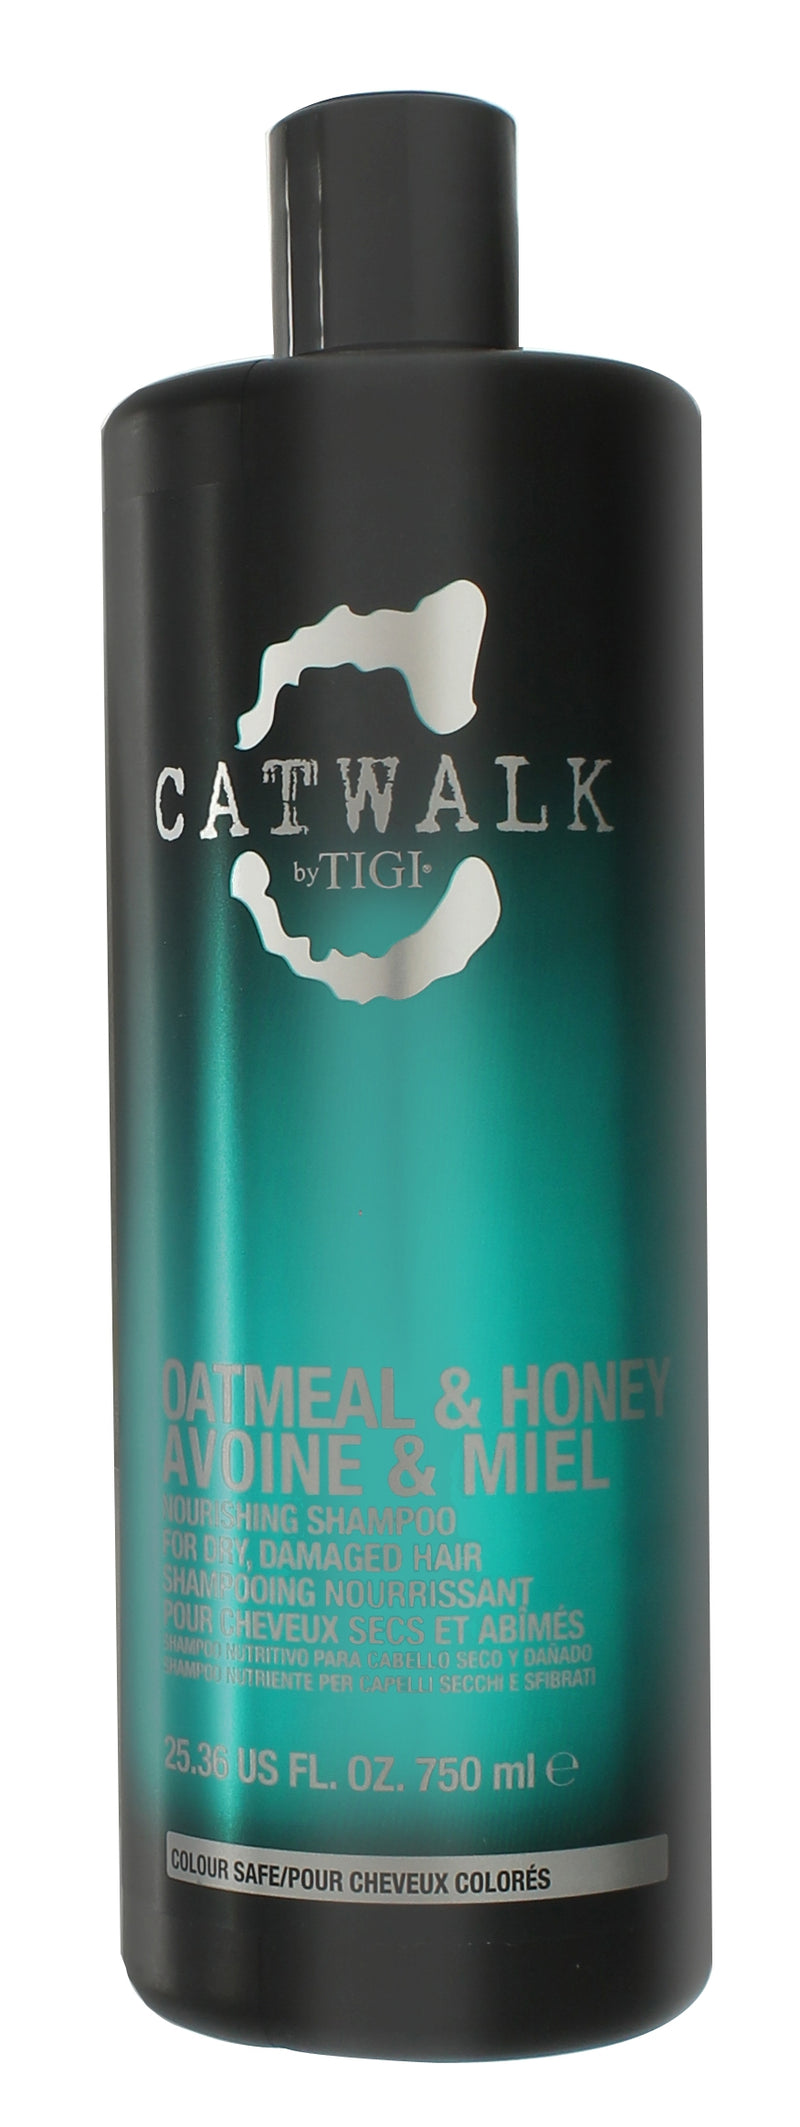 Tigi Catwalk Oatmeal & Honey Schampo 750ml - Utan Pump